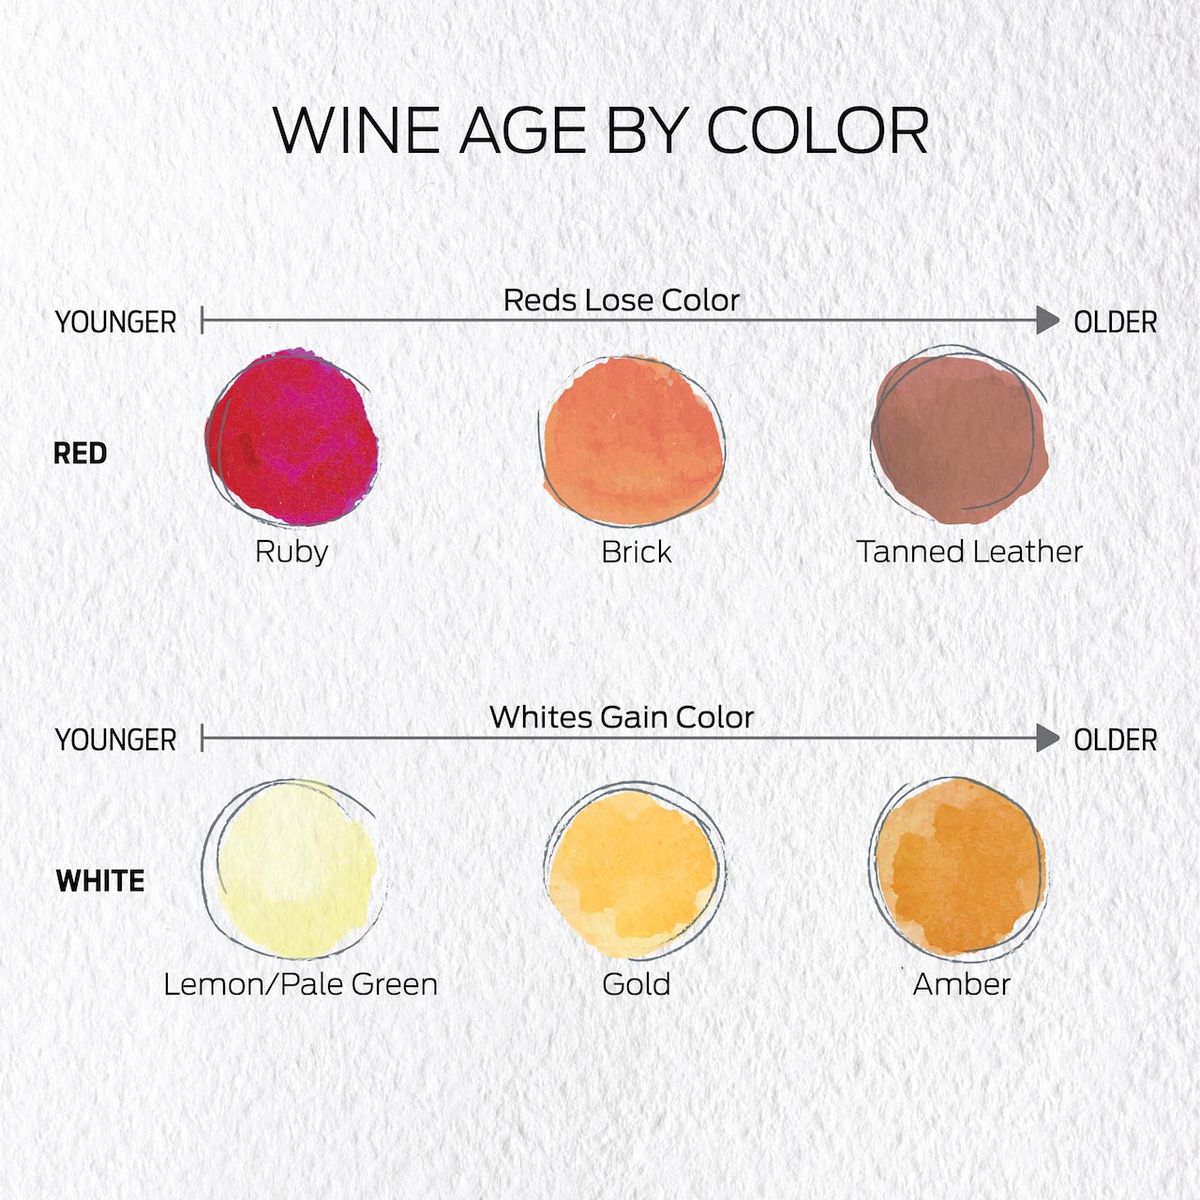 Colores de vino tinto de joven a viejo: rubí, ladrillo, cuero curtido. Colores de vino blanco de jóvenes a viejos: limón / verde pálido, dorado, ámbar